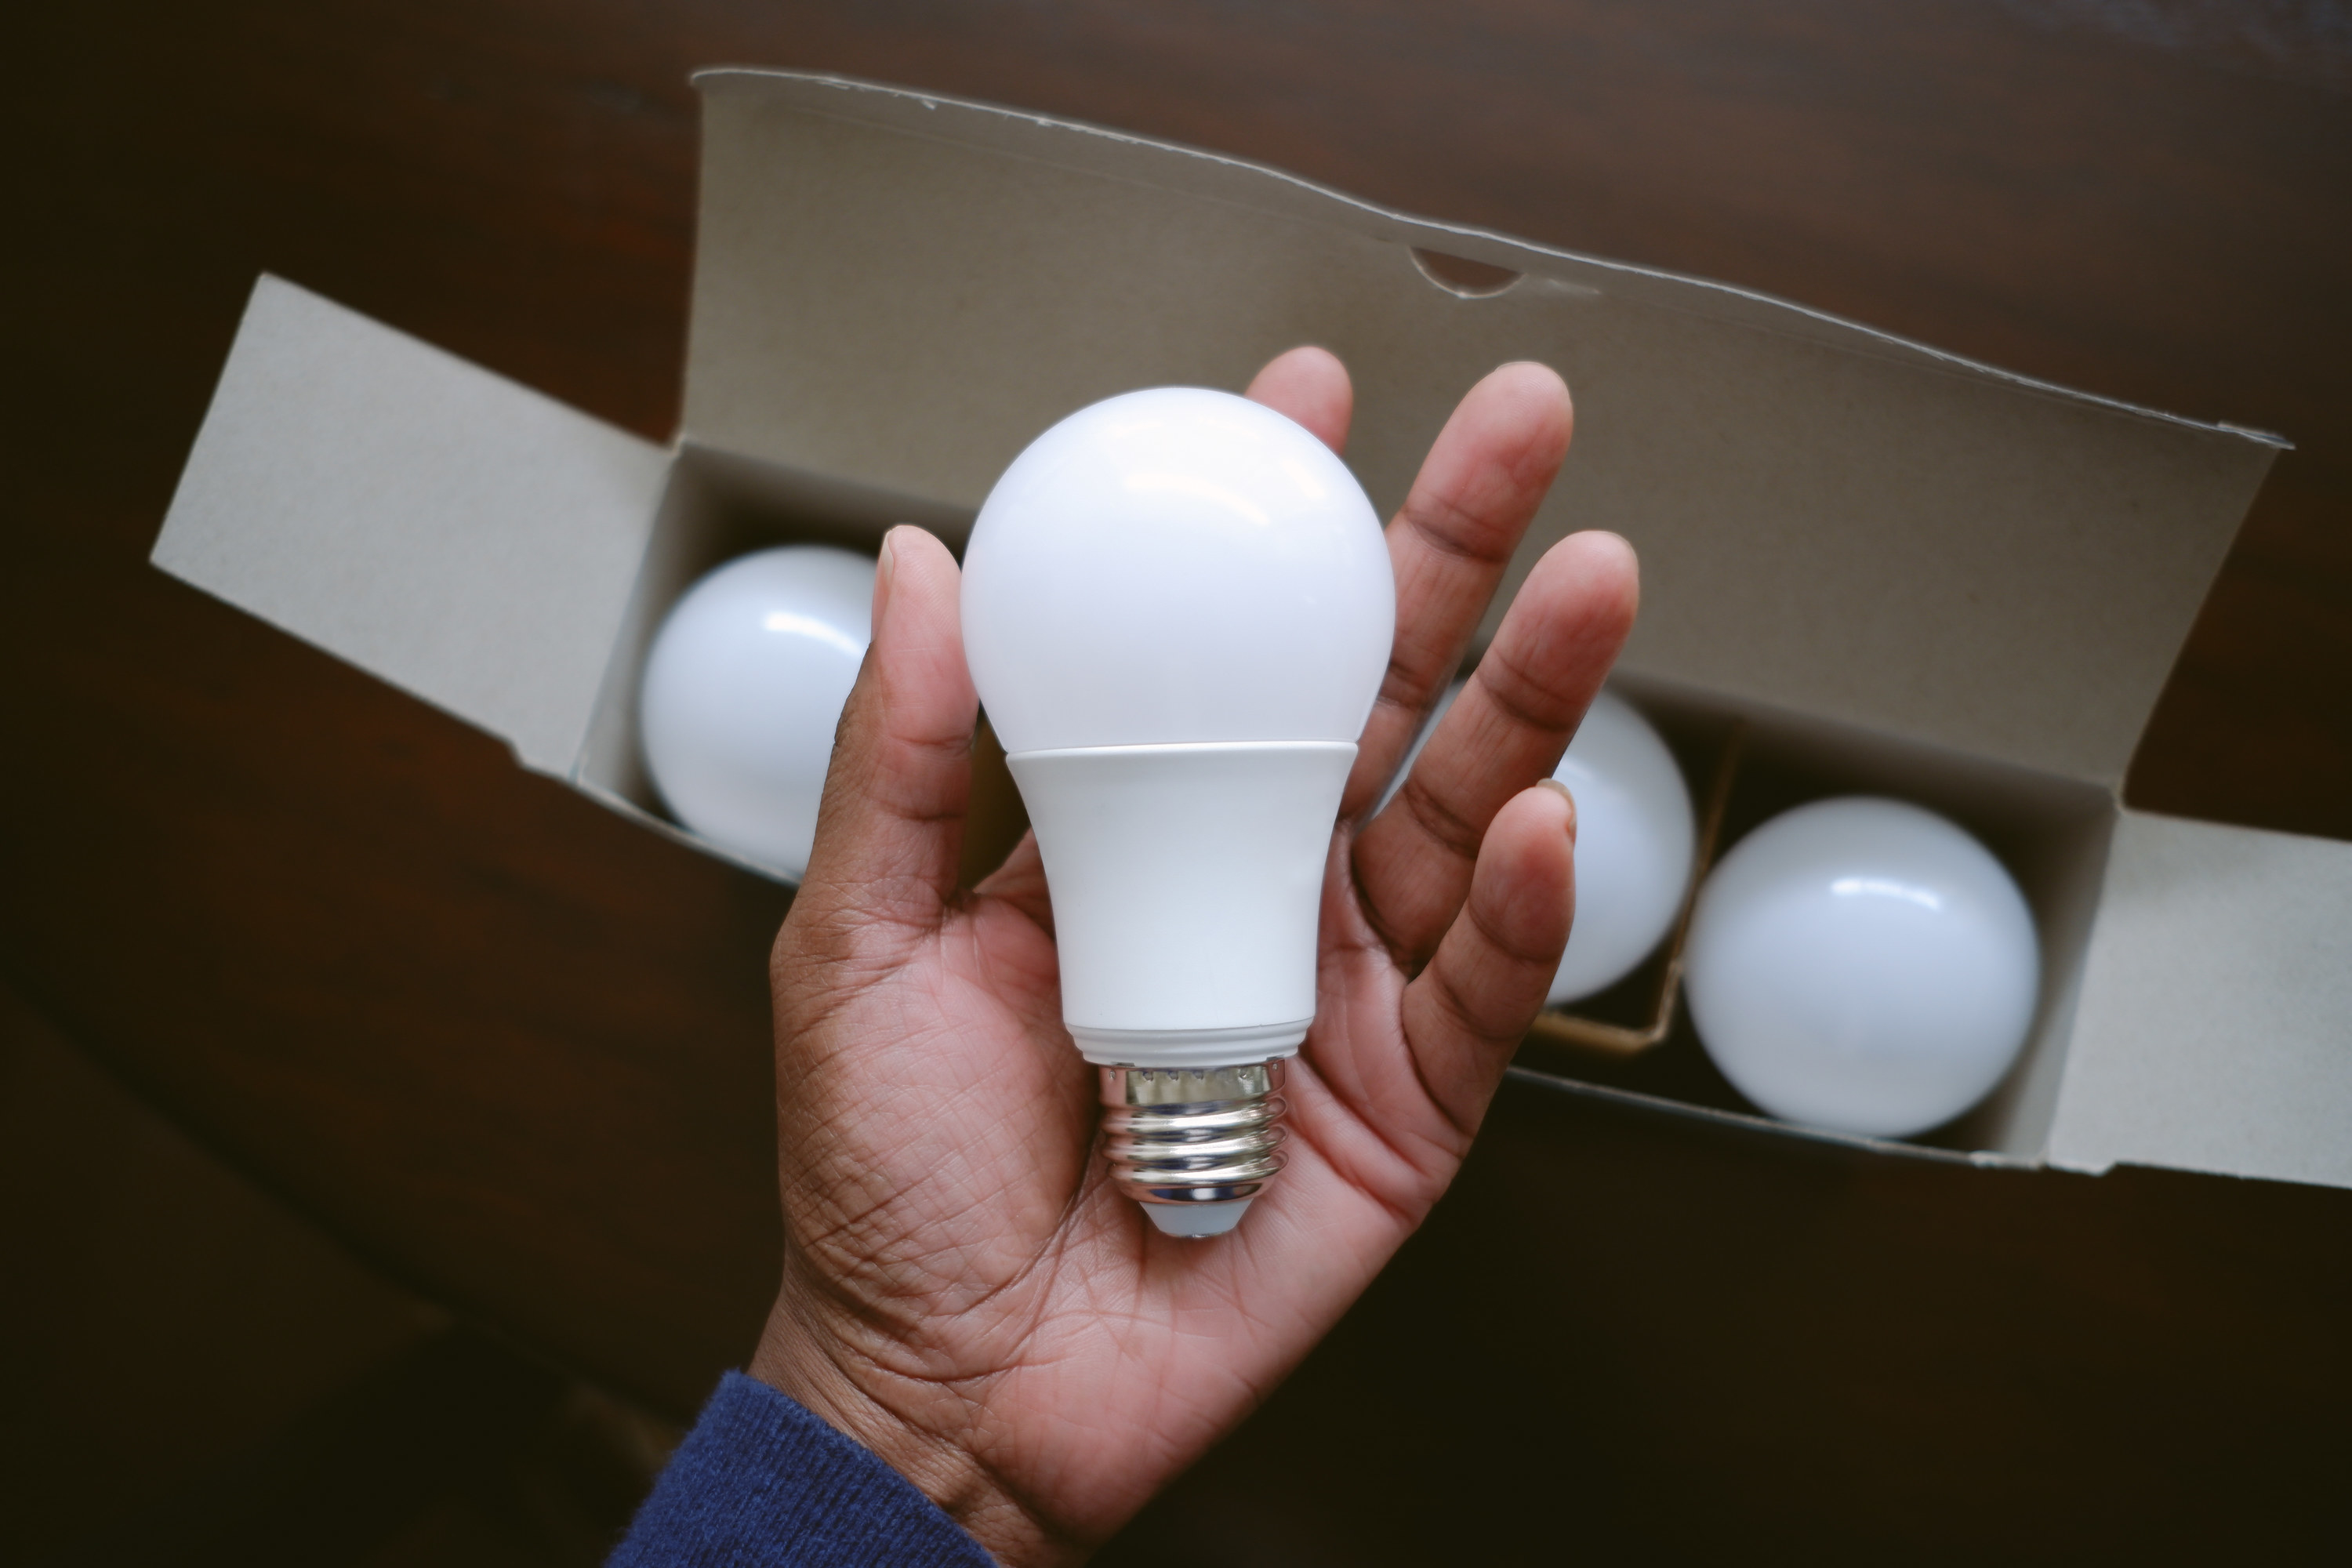 a hand holds an LED light bulb